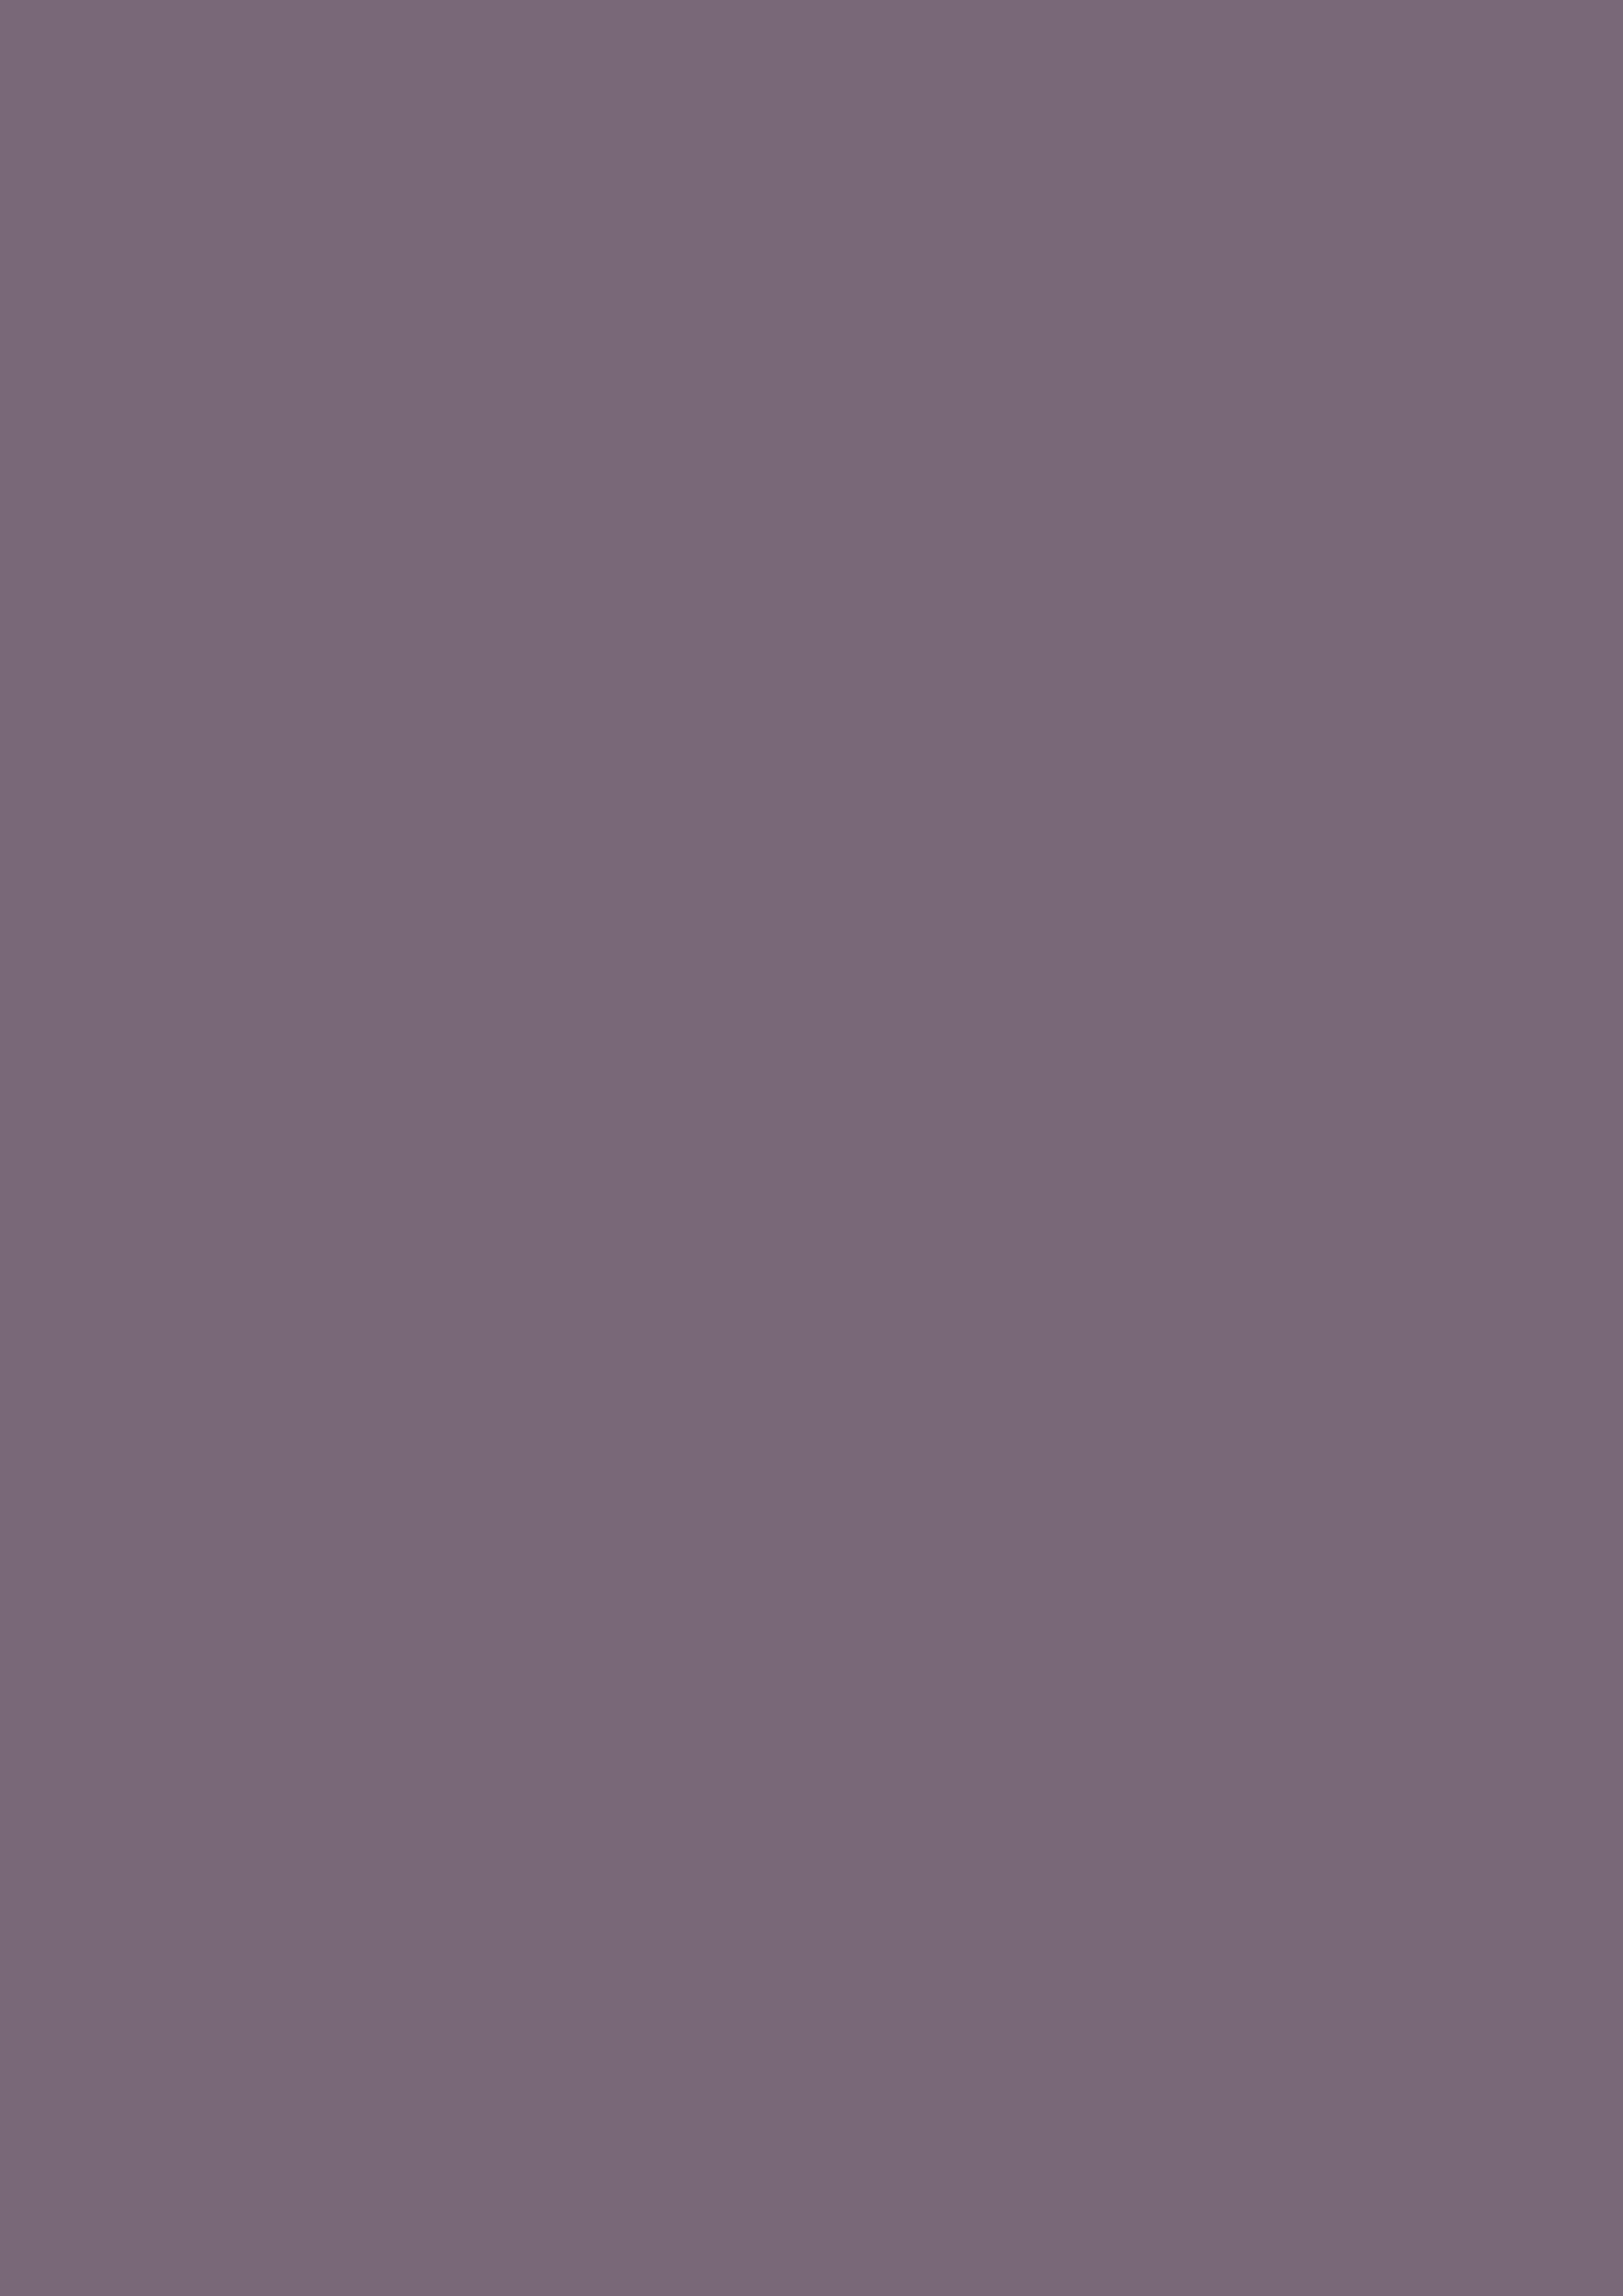 2480x3508 Old Lavender Solid Color Background